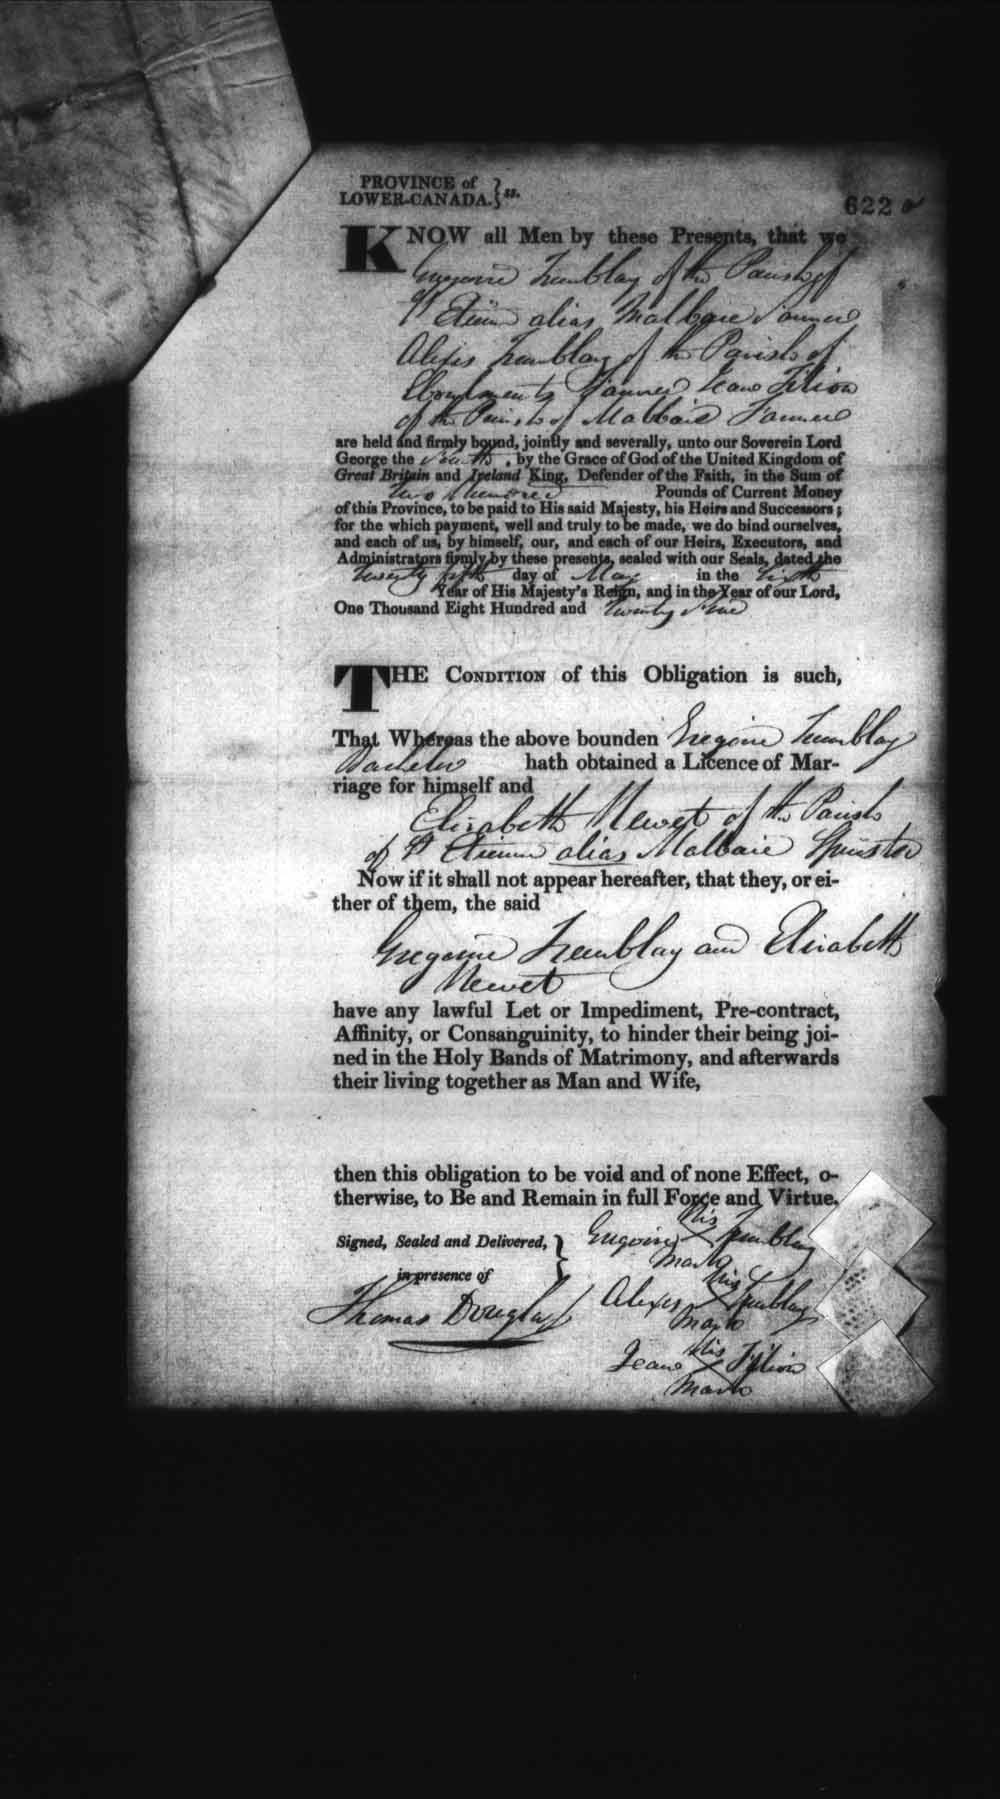 Page numérisé de Cautionnements de mariages pour le Haut-Canada et le Bas-Canada (1779-1865) pour l'image numéro: e008236640